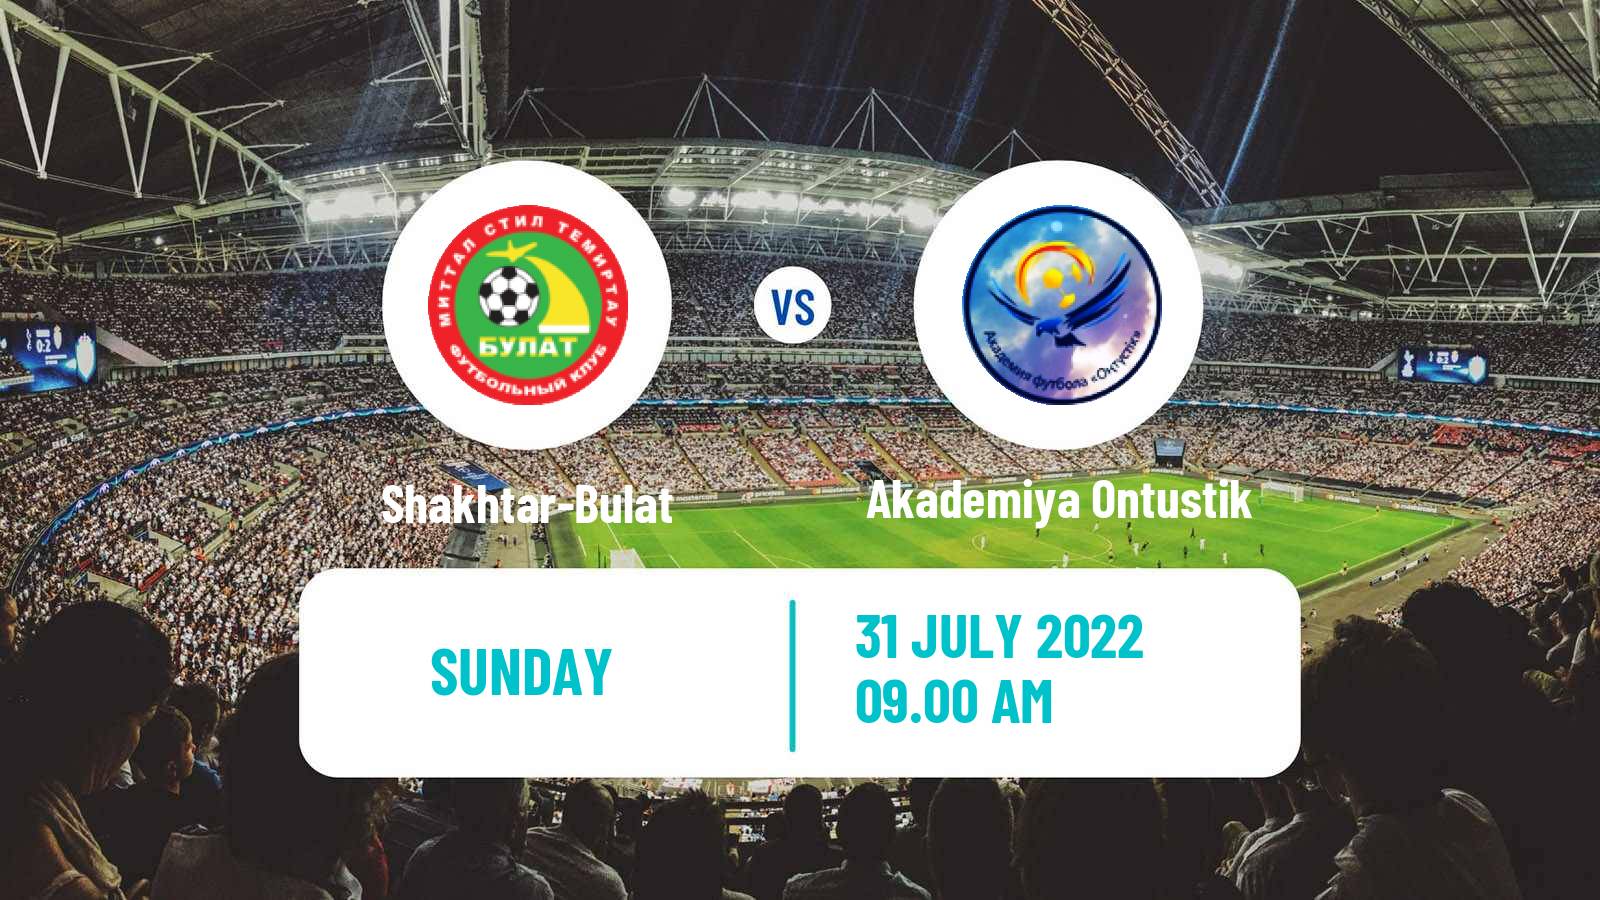 Soccer Kazakh First Division Shakhtar-Bulat - Akademiya Ontustik